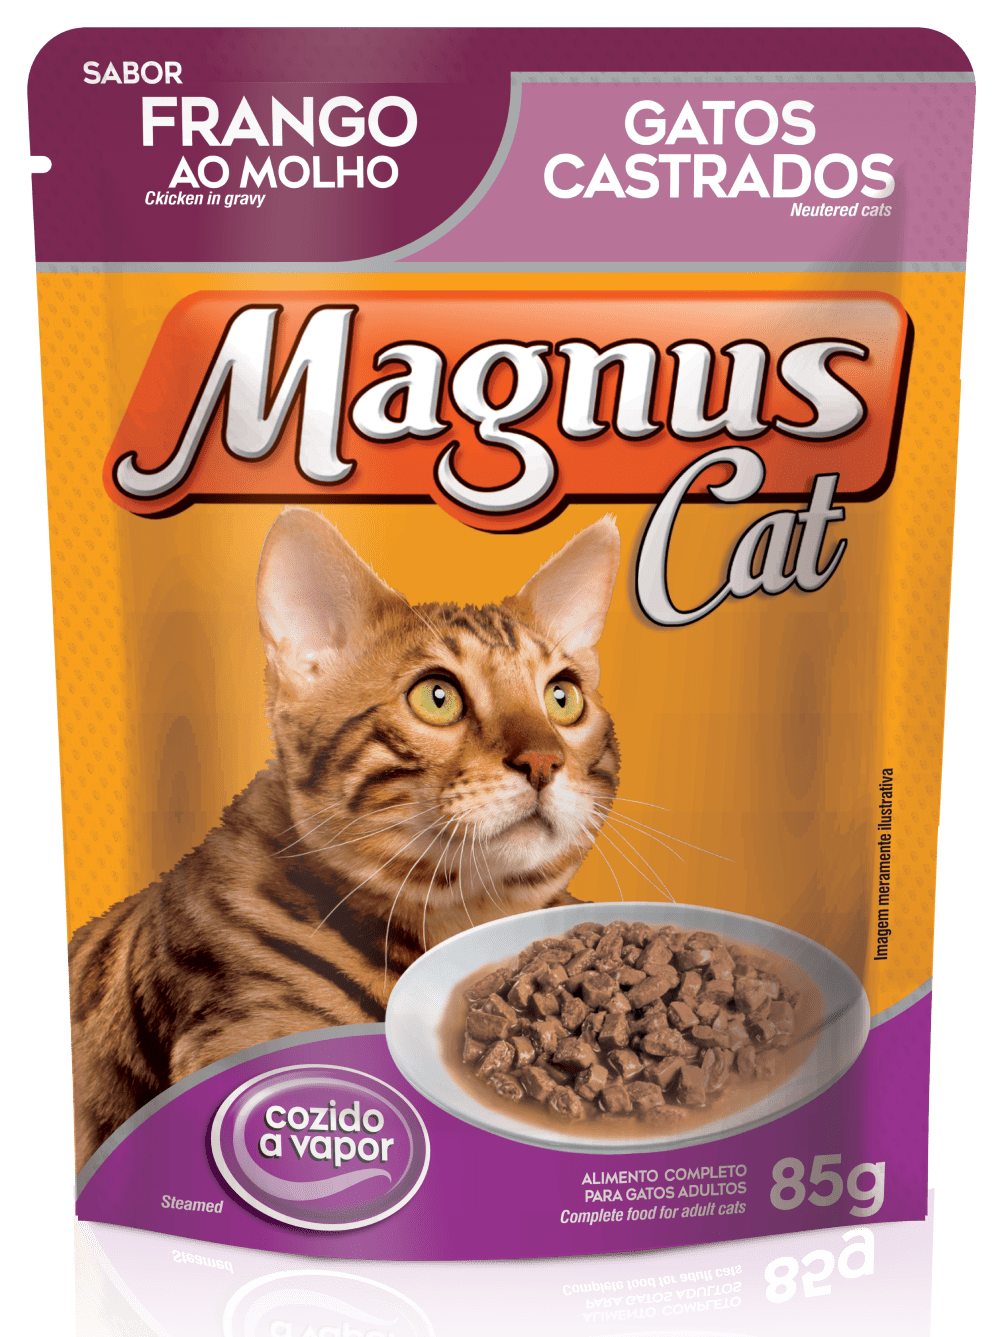 Magnus Sachet Neutered Cats – Chicken in Gravy Flavor